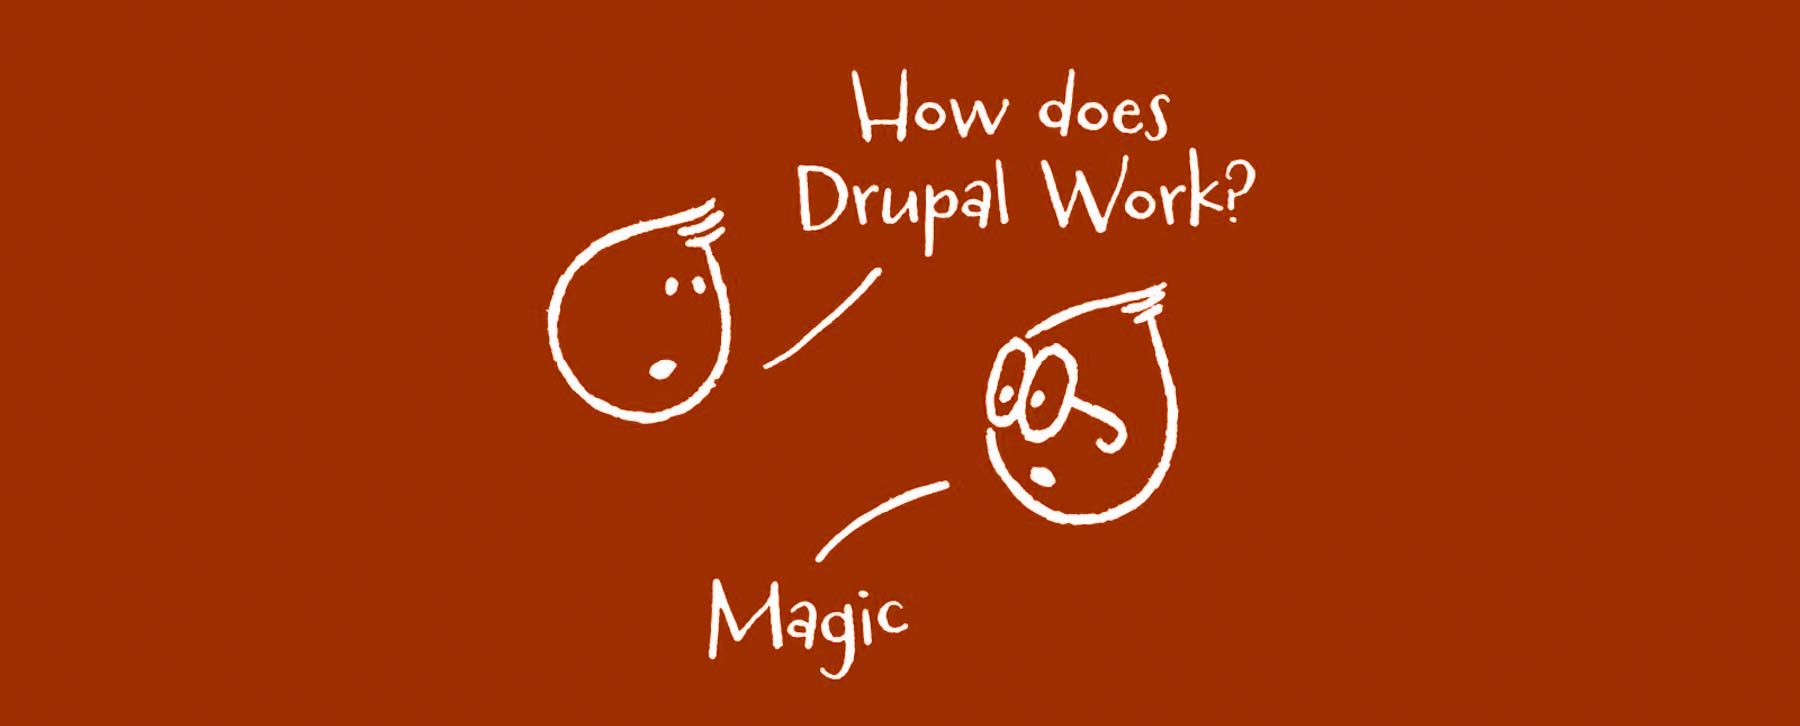 Drupal magic